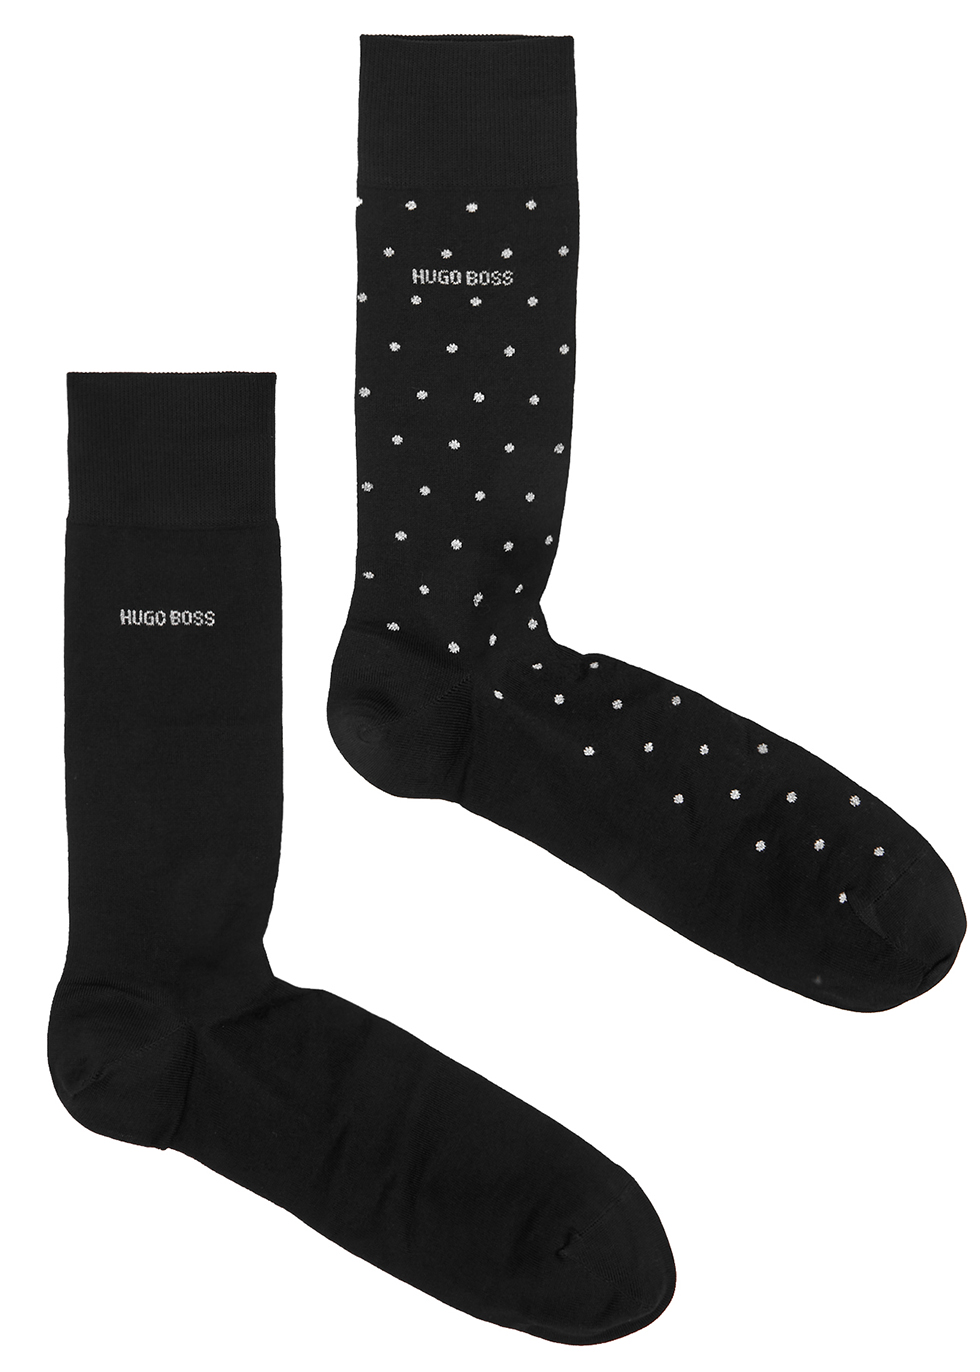 hugo boss mens socks gift set